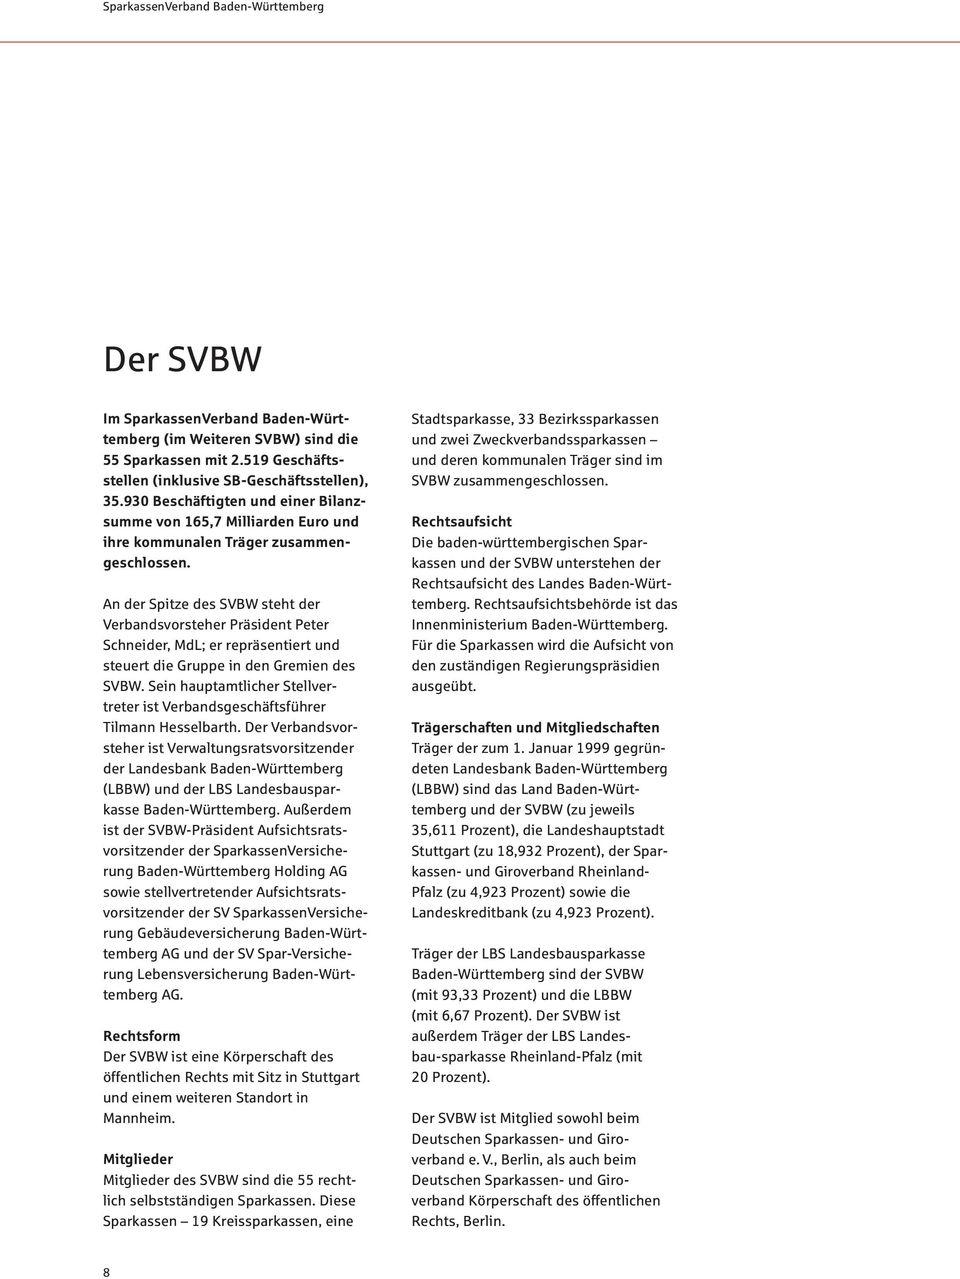 An der Spitze des SVBW steht der Verbandsvorsteher Präsident Peter Schneider, MdL; er repräsentiert und steuert die Gruppe in den Gremien des SVBW.